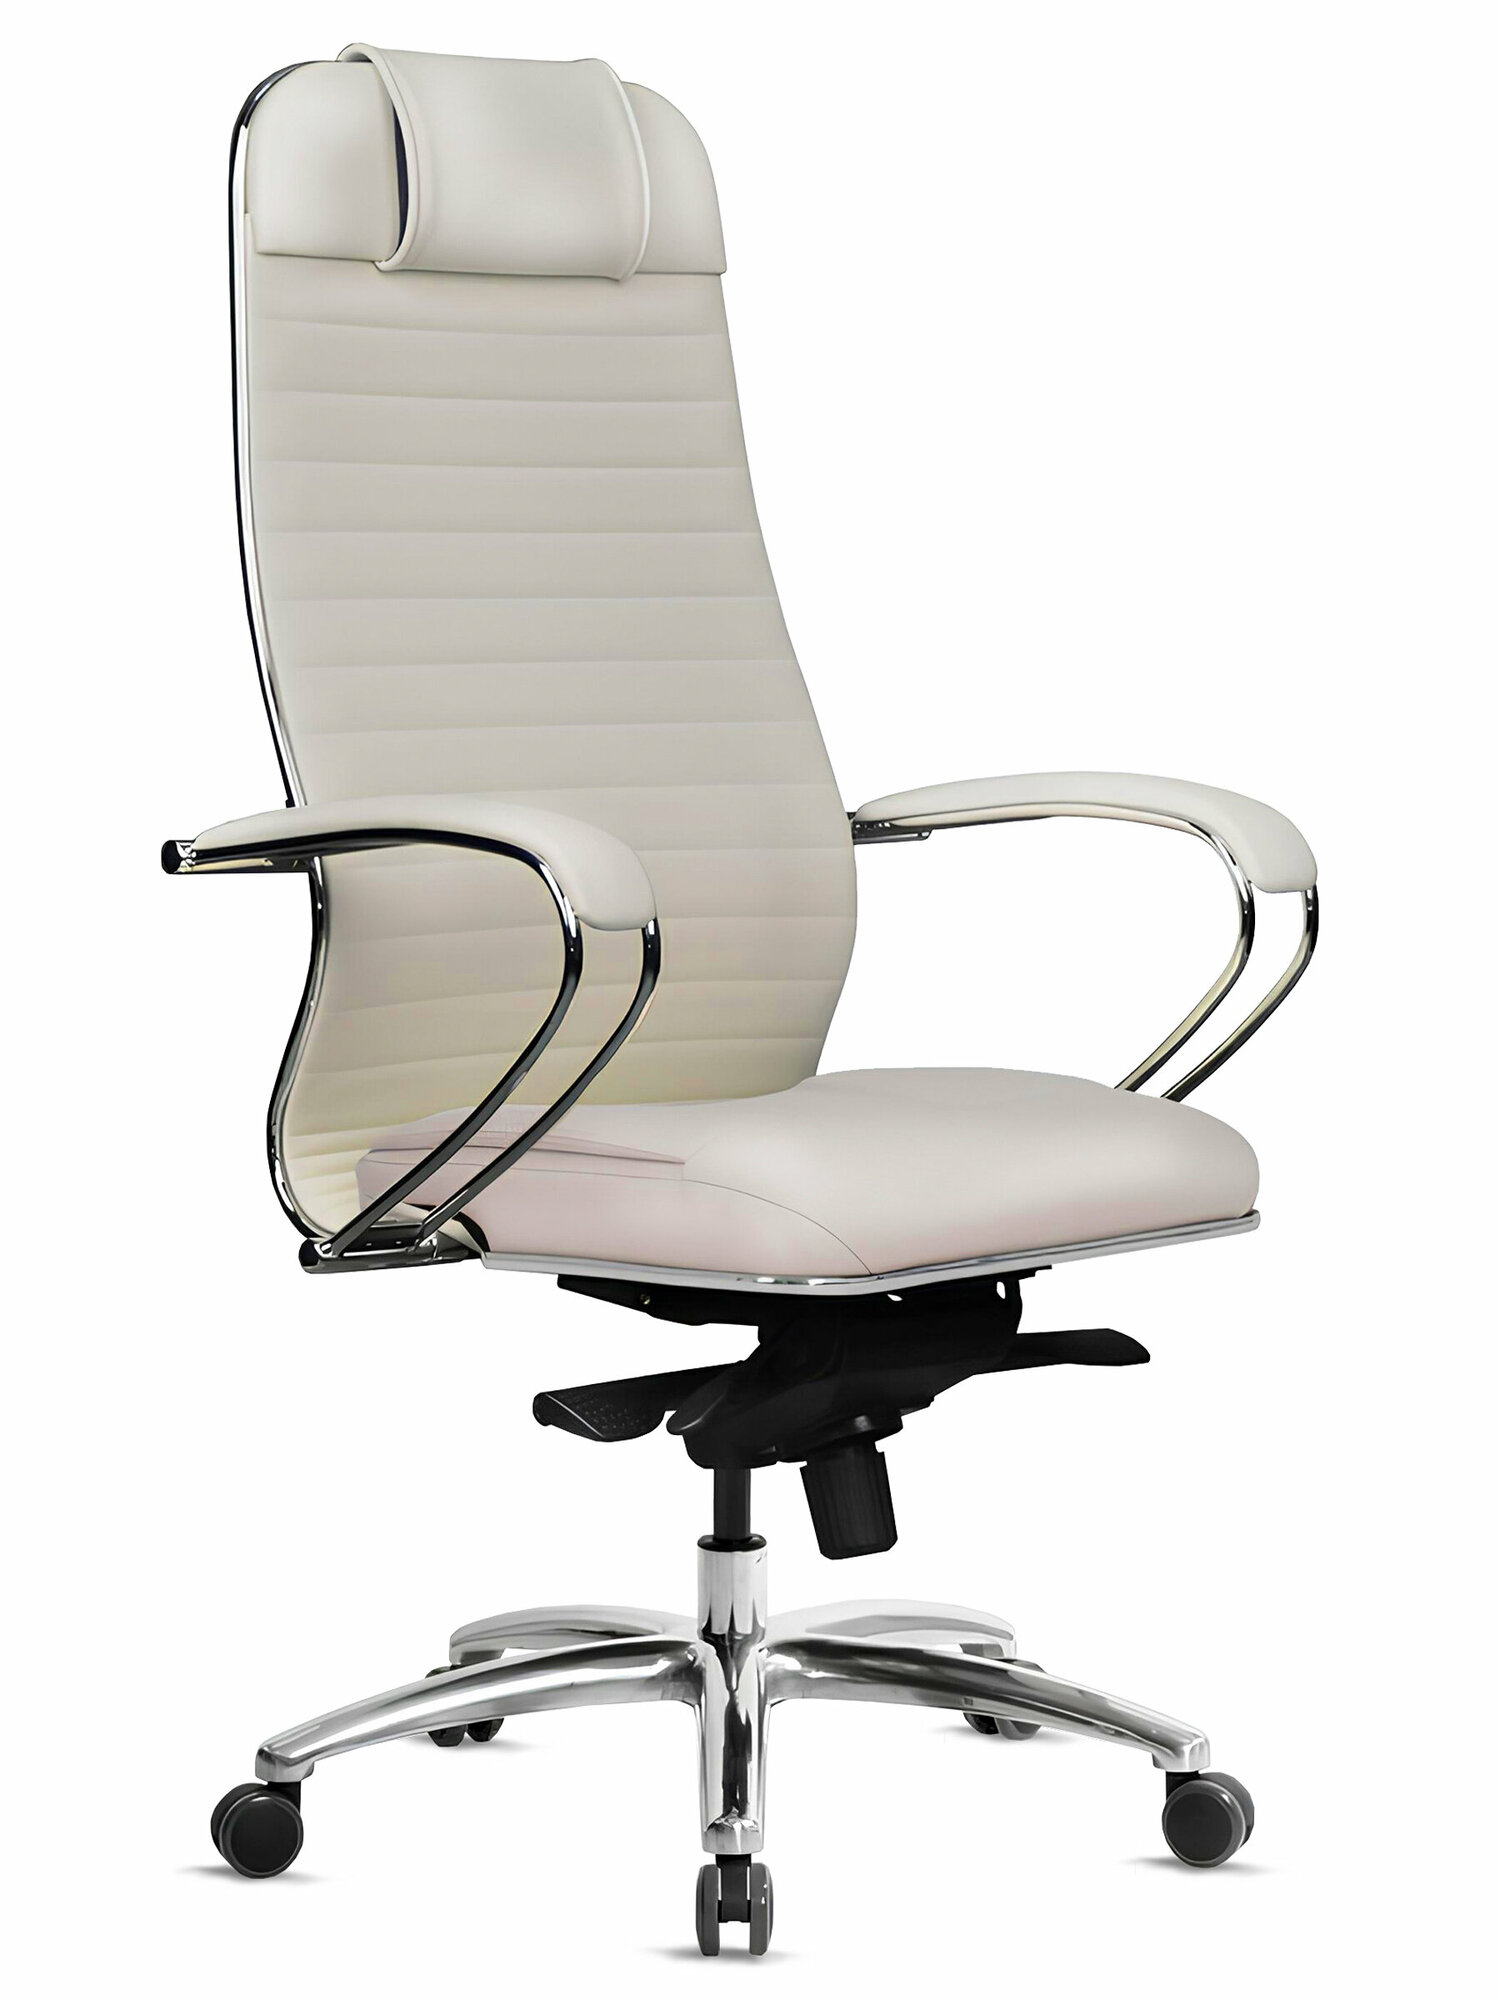 Кресло руководителя METTA Samurai KL-1.04 Infinity Easy Clean светло-бежевый, экокожа (MPES) / Компьютерное кресло для директора, начальника, менеджера